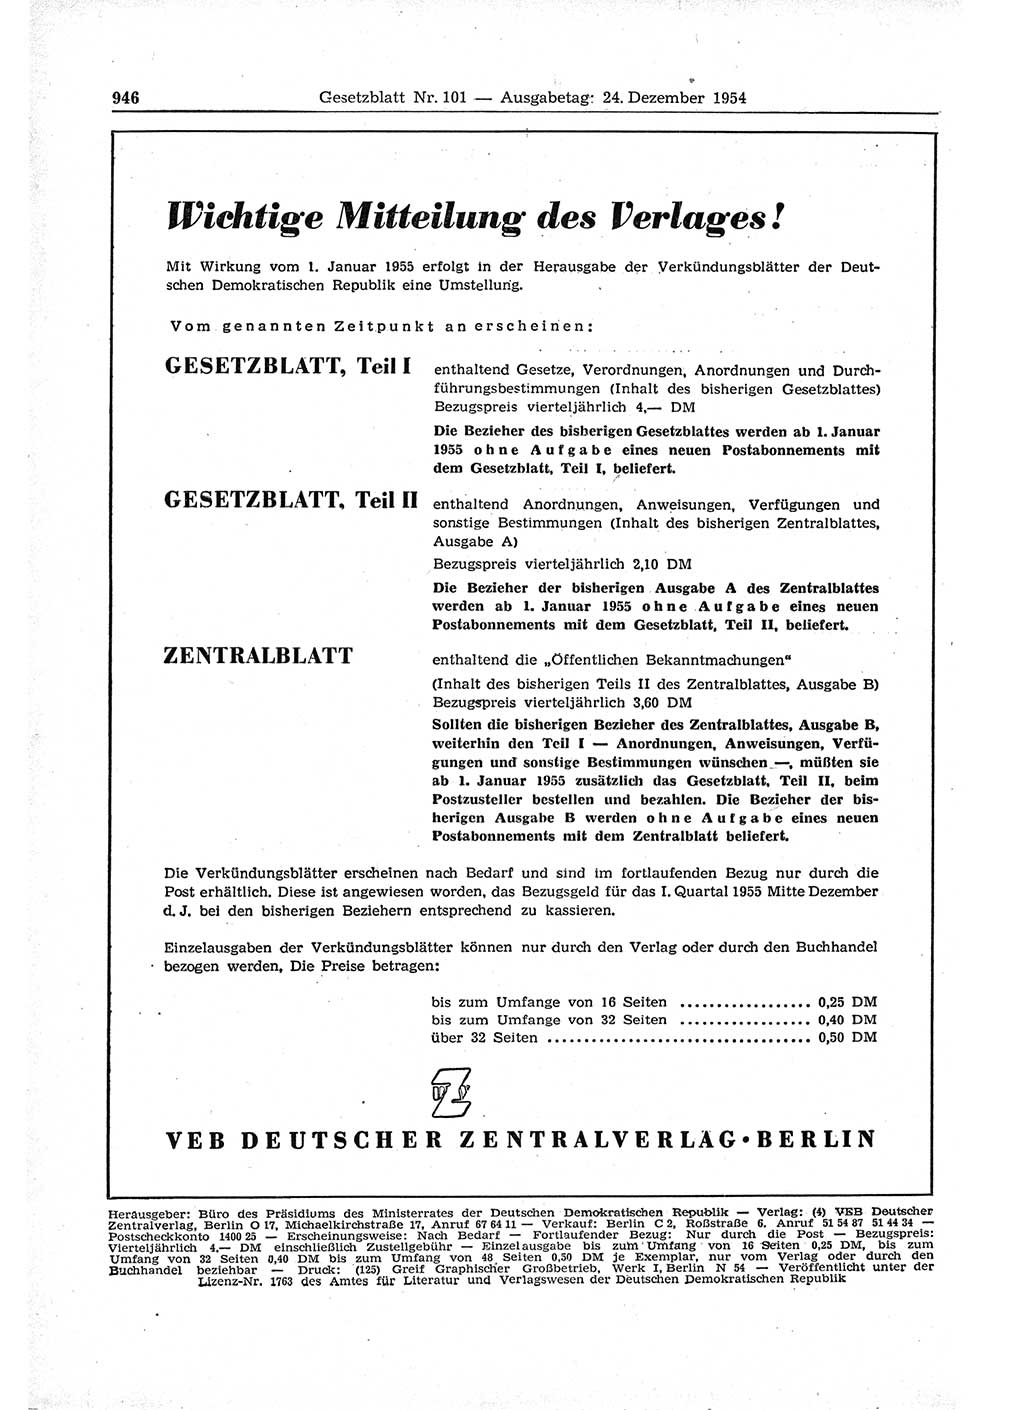 Gesetzblatt (GBl.) der Deutschen Demokratischen Republik (DDR) 1954, Seite 946 (GBl. DDR 1954, S. 946)